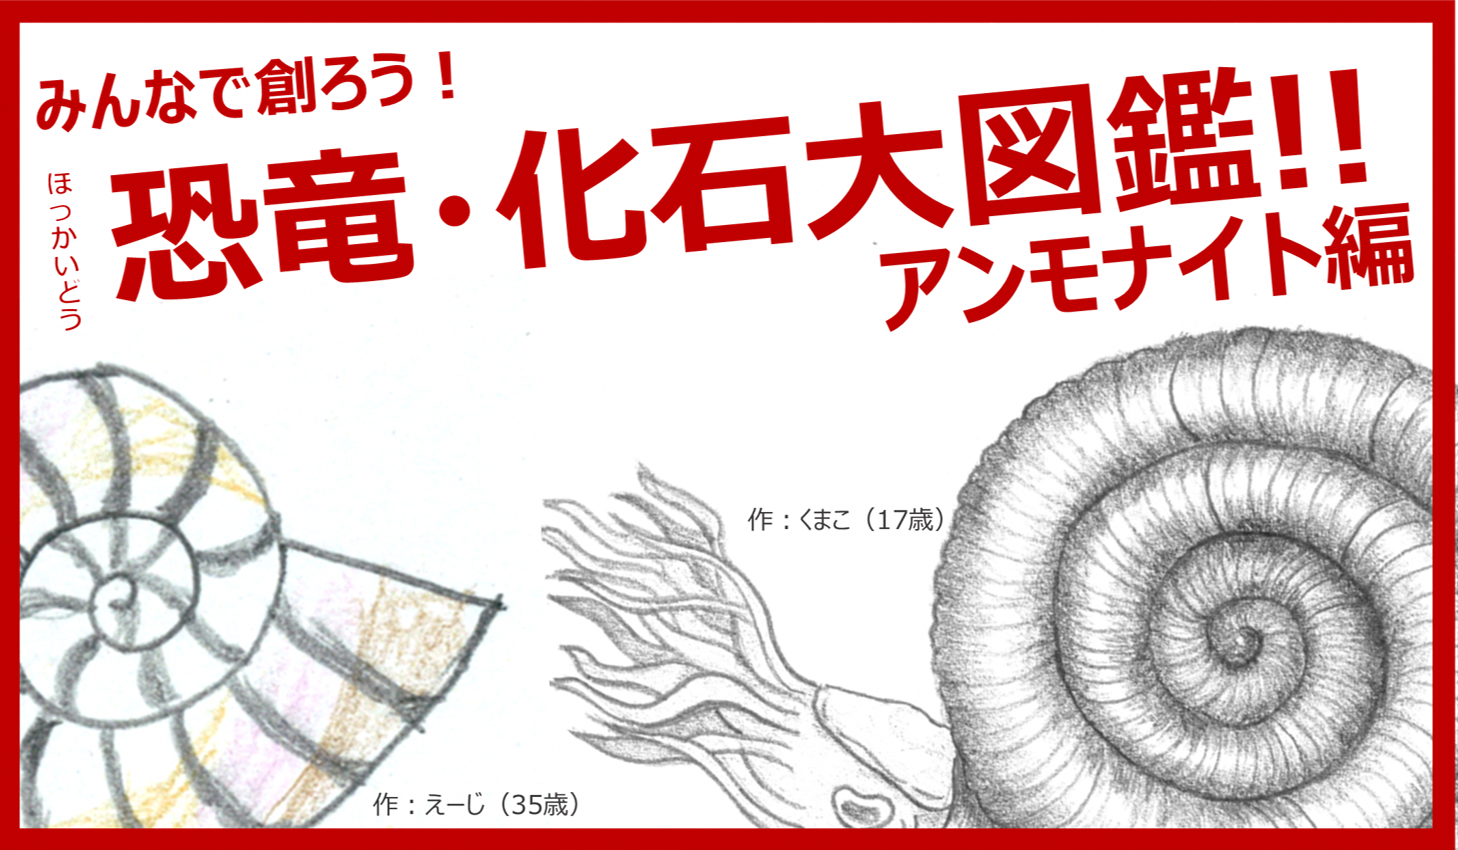 15155円 直営店に限定 アンモナイト化石１㎏ 飾り台付き